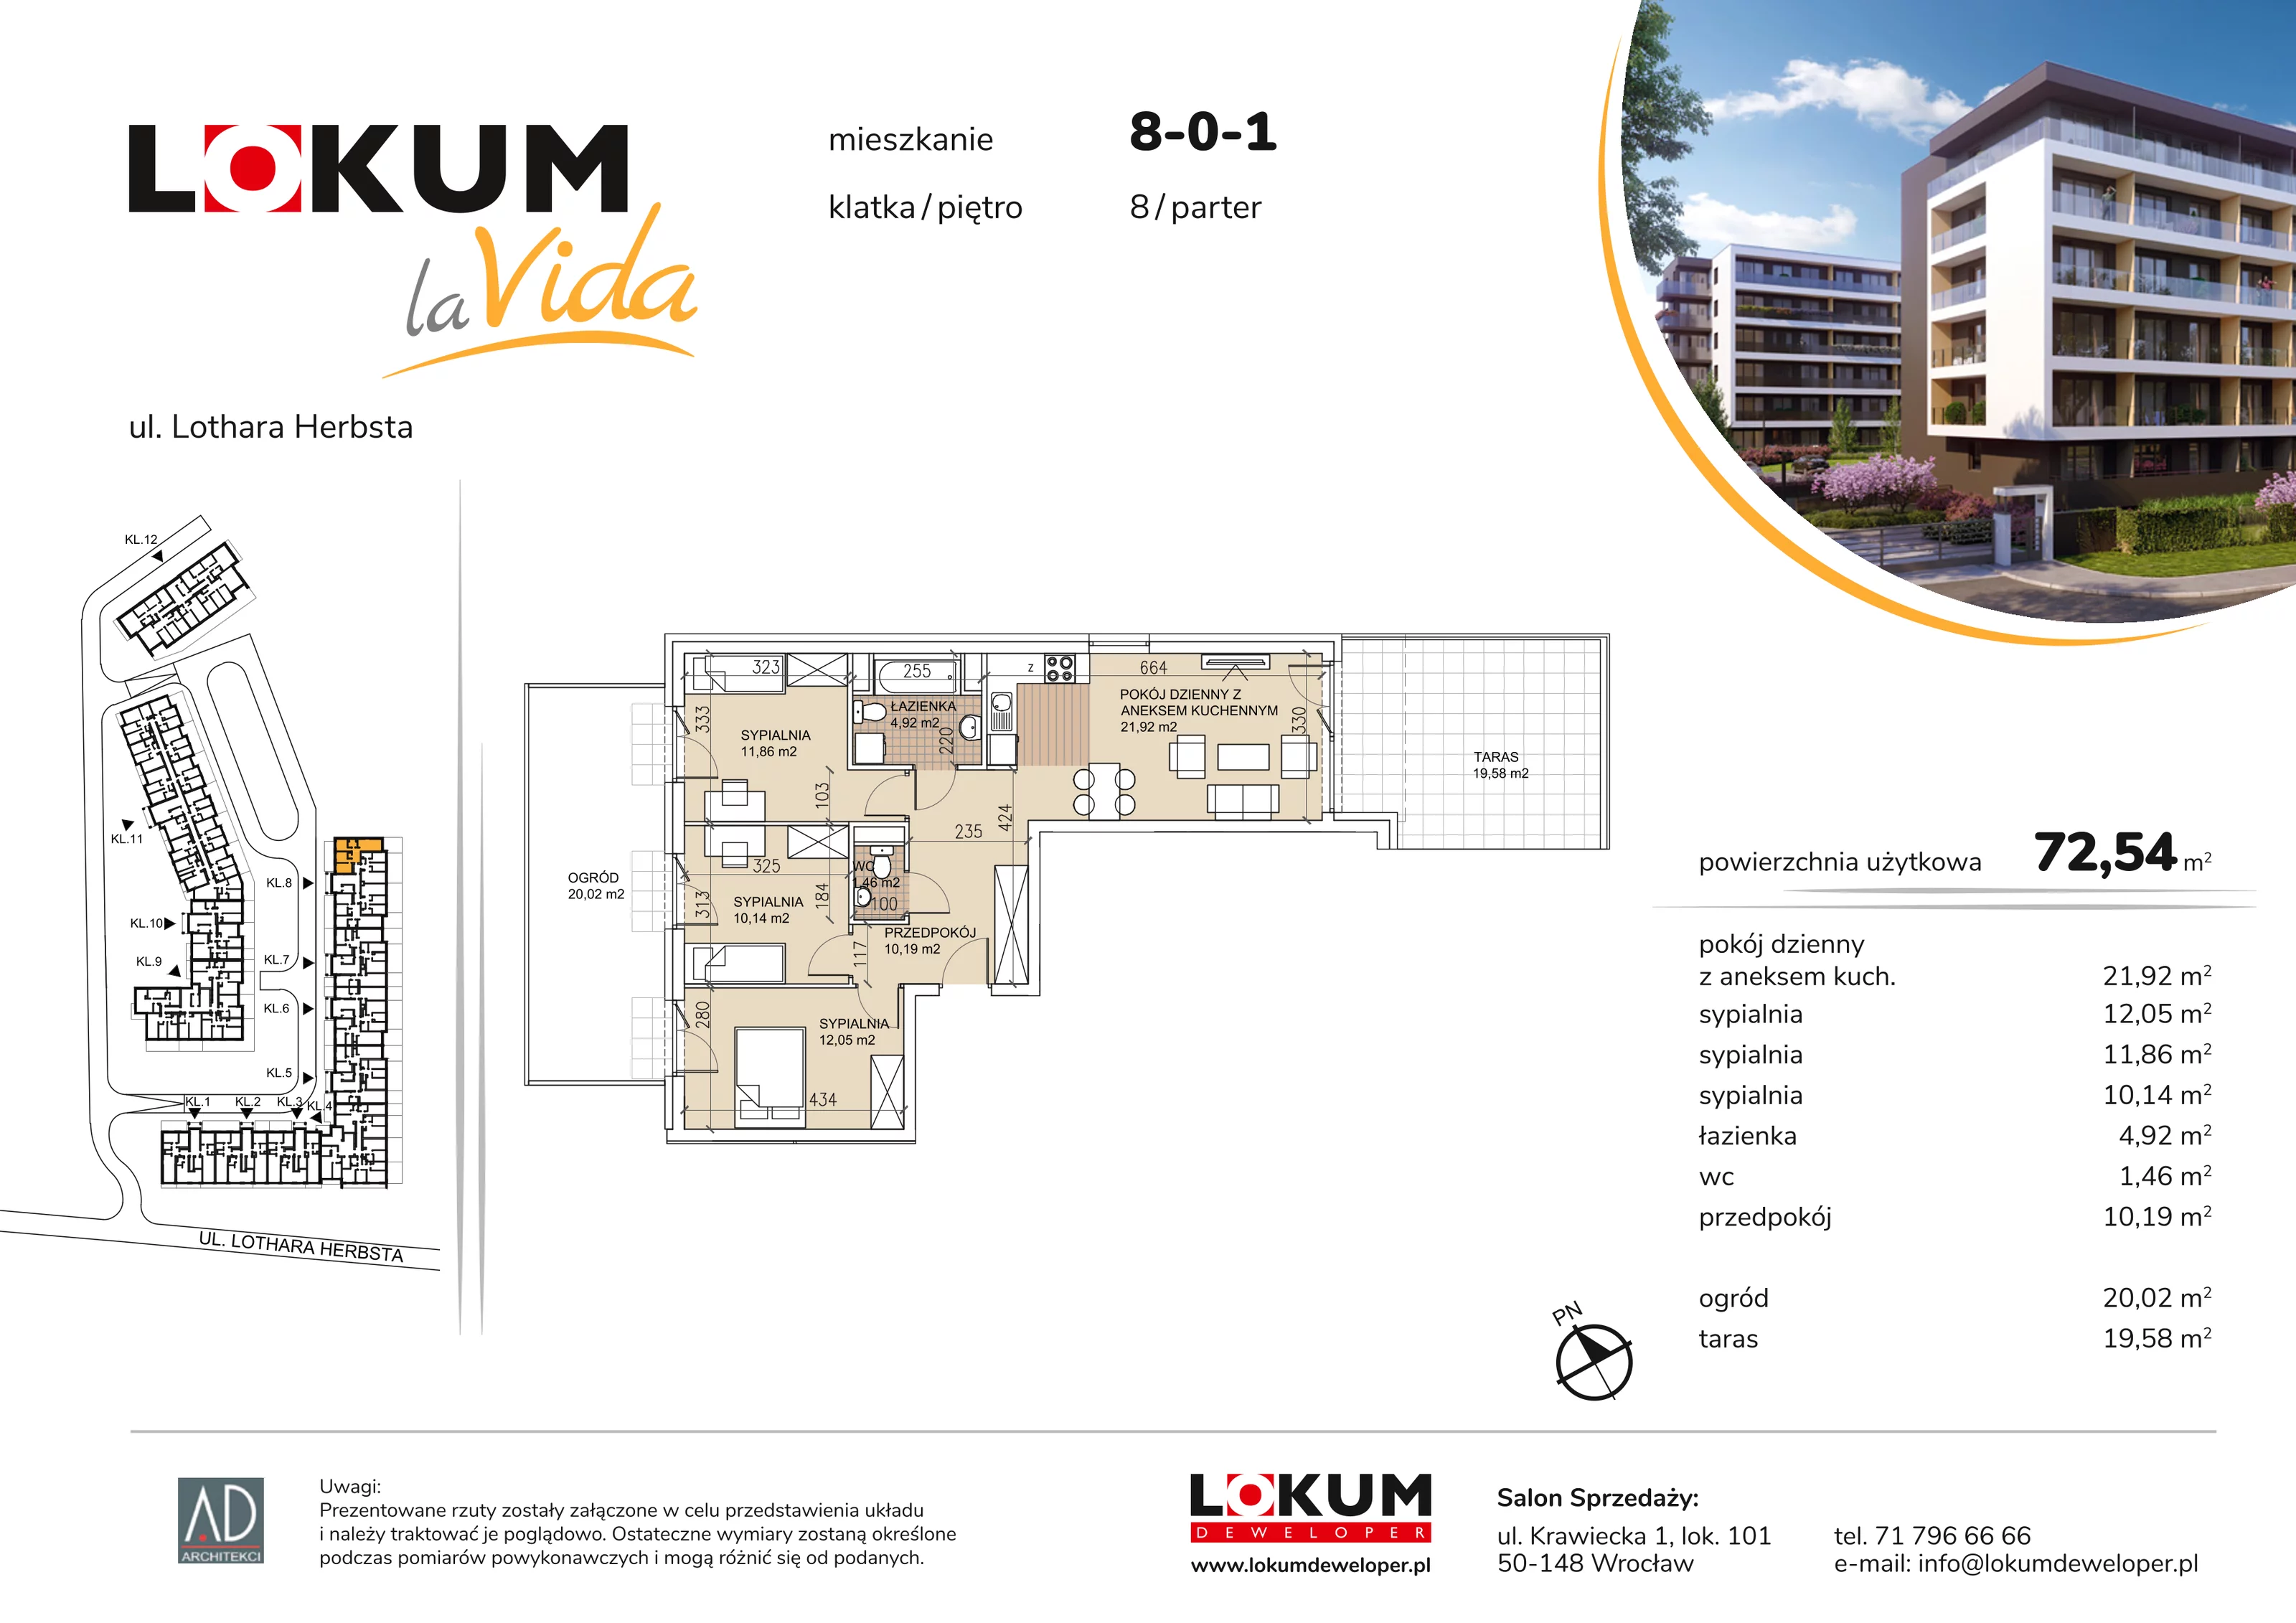 Mieszkanie 72,54 m², parter, oferta nr 8-0-1, Lokum la Vida, Wrocław, Sołtysowice, ul. Lothara Herbsta